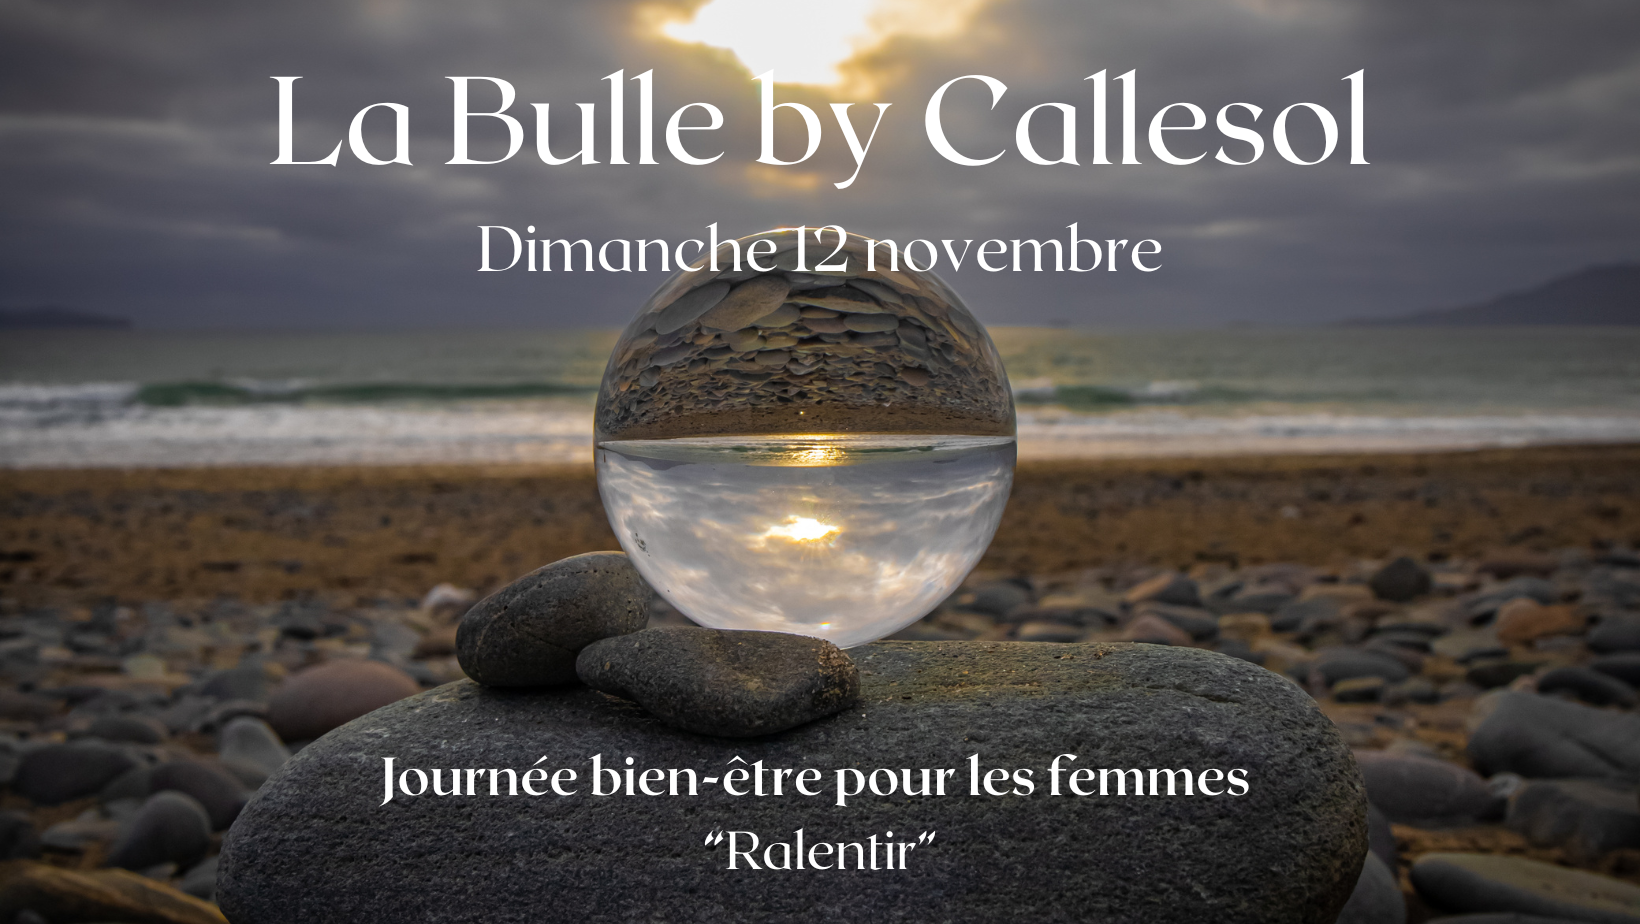 La Bulle by Callesol, c'est une journée bien-être pour les femmes. La prochaine a lieu le dimanche 12 novembre 2023, sur le thème "Ralentir"